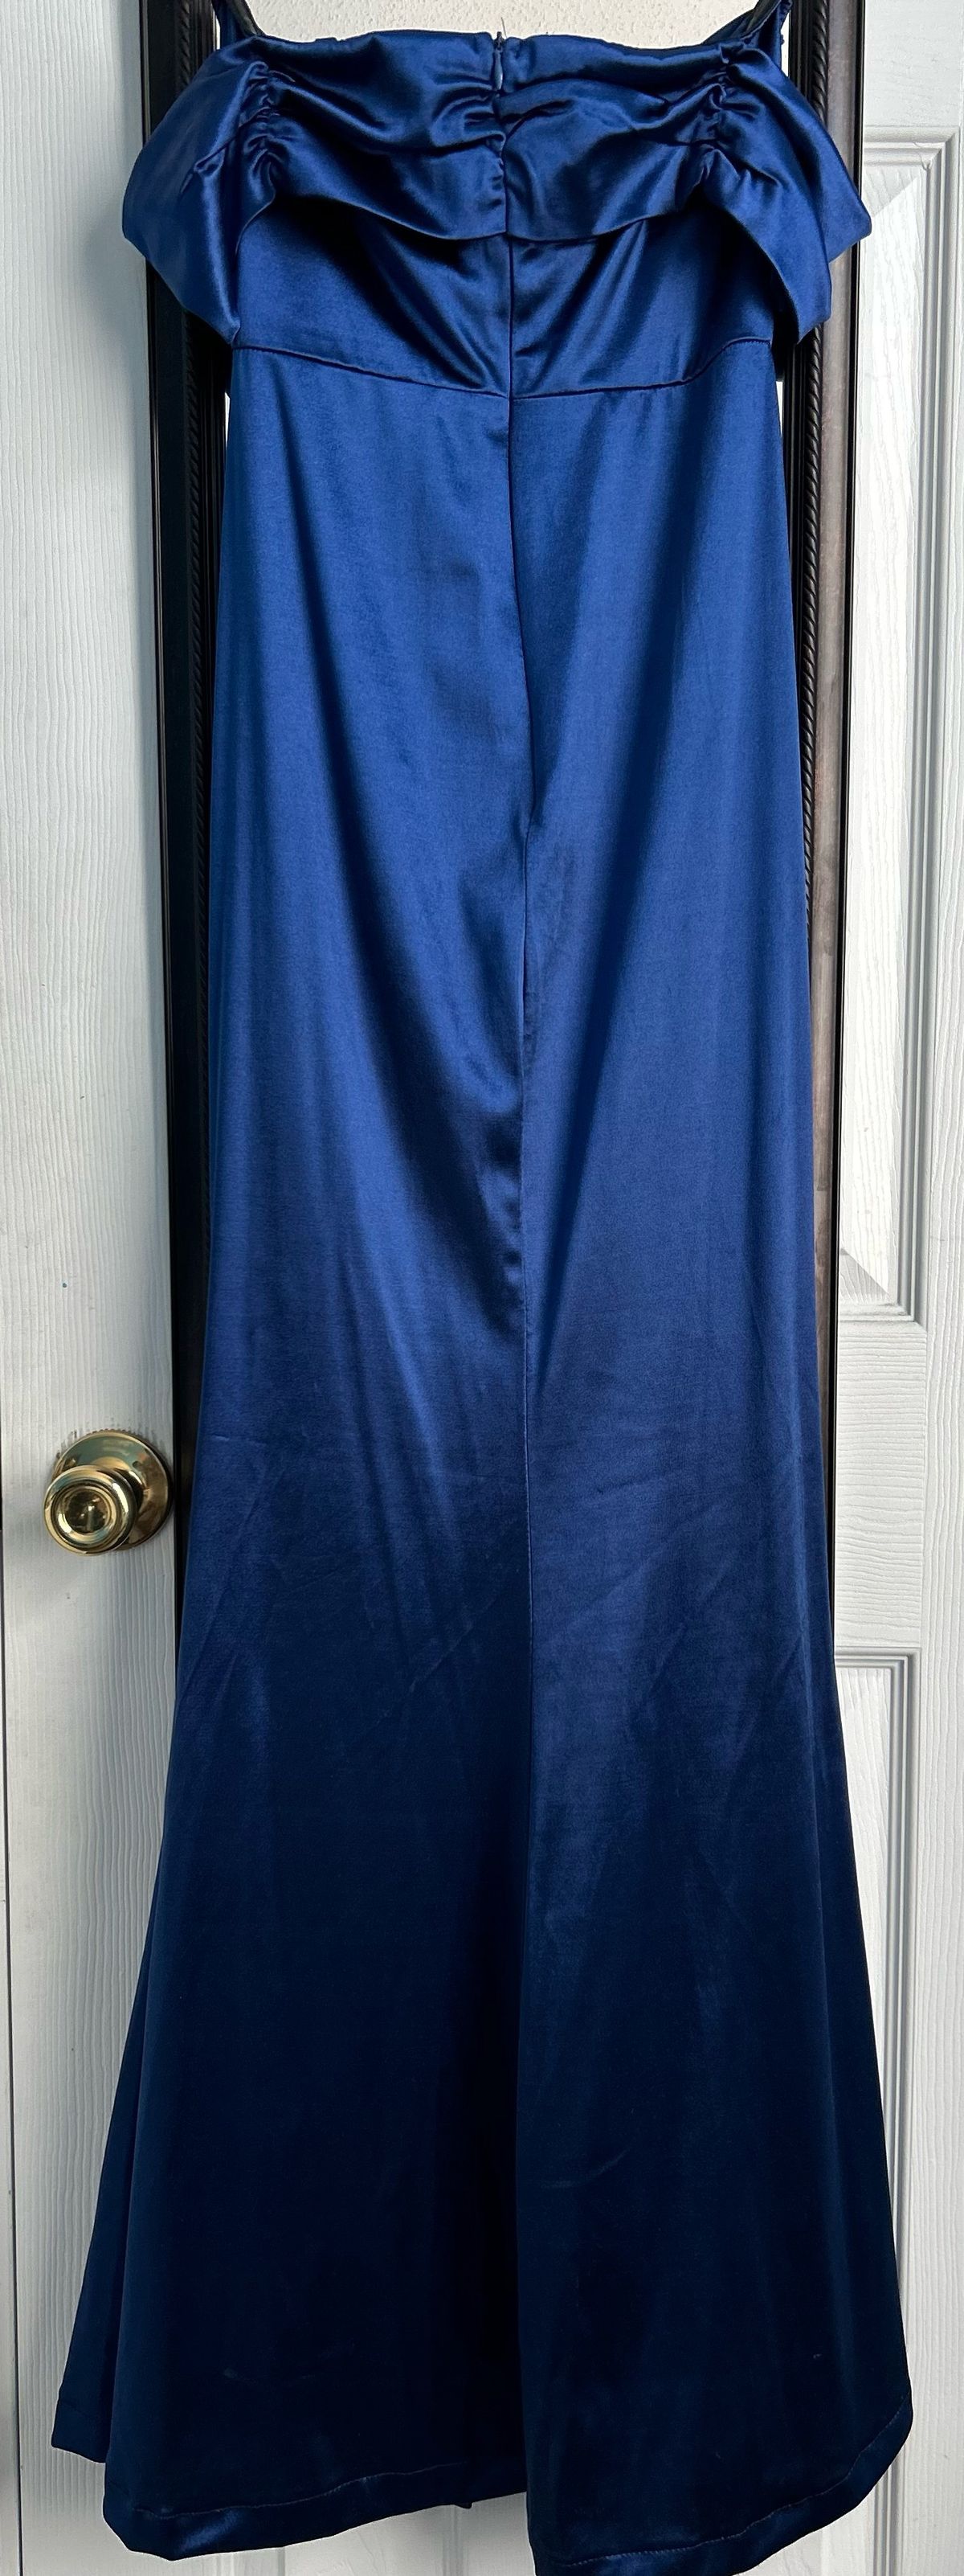 Size 4 Prom Off The Shoulder Satin Royal Blue Side Slit Dress on Queenly